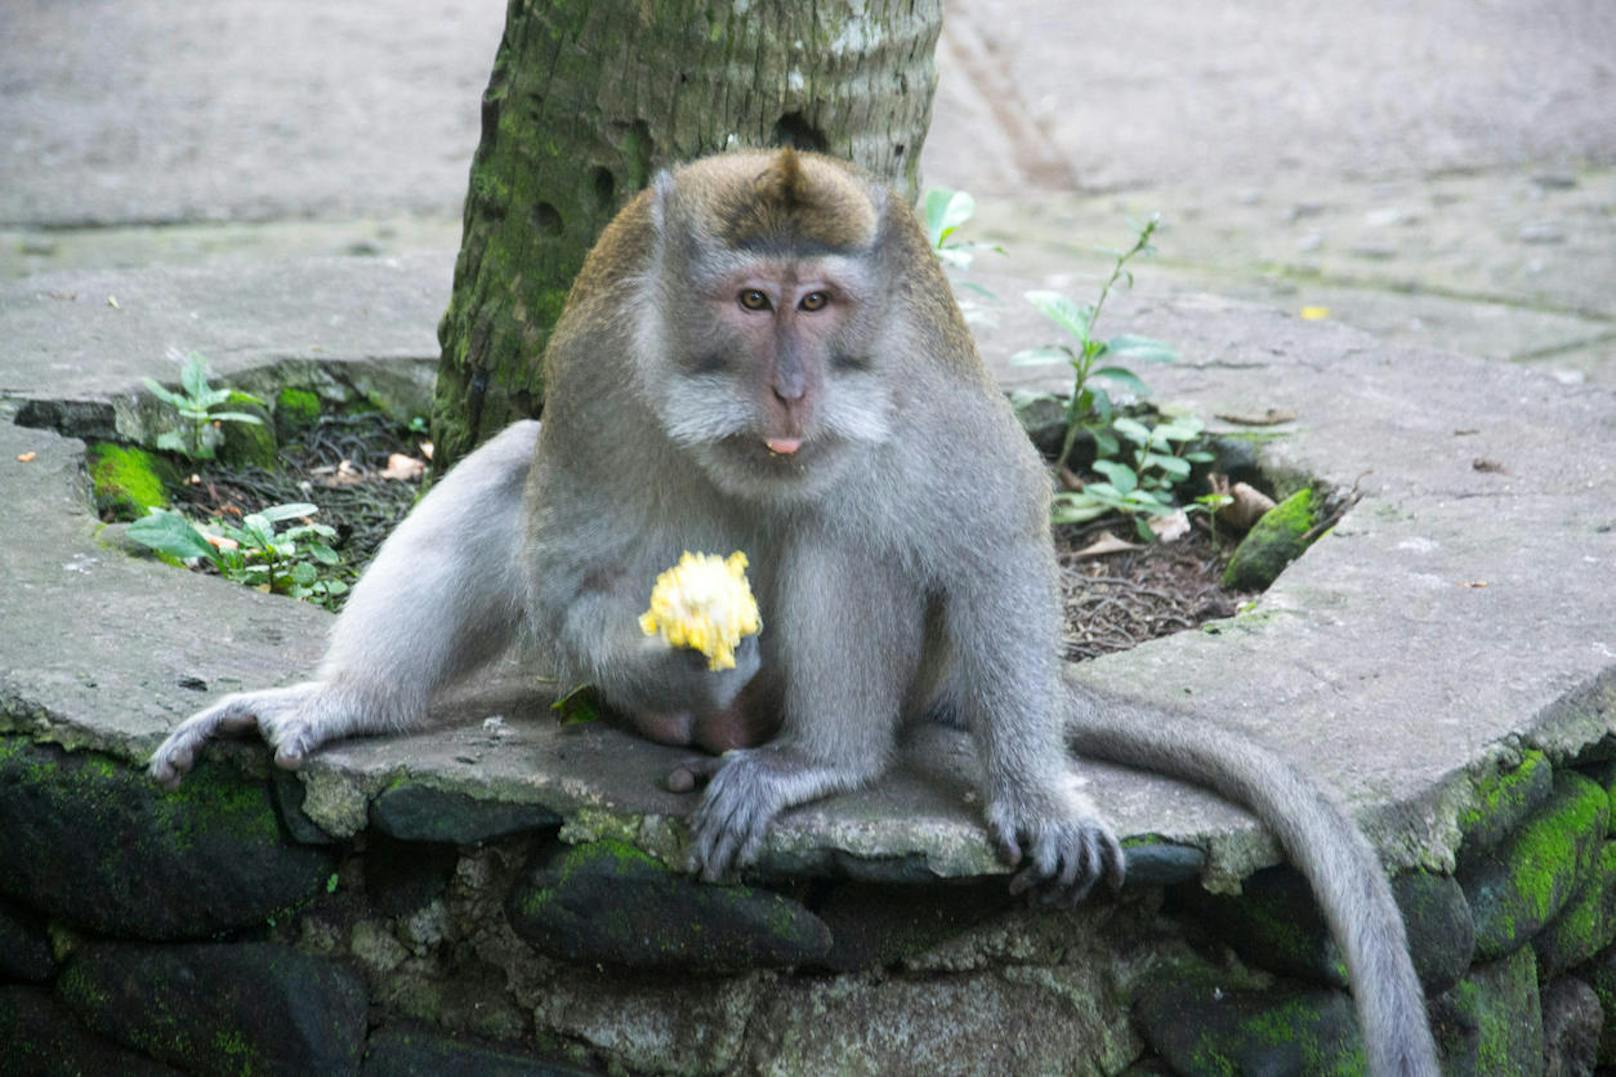 <b>Die Masche mit dem Affen: Bali</b>

Wer auf Bali die zahlreichen exotischen Tempel und Sehenswürdigkeiten besucht, darf sich häufig über die Gesellschaft grauer Langschwanz-Makaken freuen. Mit den süßen Äffchen kann man sich zwar königlich amüsieren, jedoch sollte man sich vor den flauschigen Primaten durchaus in Acht nehmen. Kinderbanden haben einige der kleinen Äffchen speziell darauf abgerichtet, dass sie Touristen die Handtasche oder Schmuckstücke stehlen. Sobald die haarigen Diebe in den Baumwipfeln der Tempelanlagen verschwunden sind, erklären sich Kinder selbstlos dazu bereit, das Diebesgut gegen eine kleine Gebühr wieder aus dem Baum zu pflücken. Leider ist die "kleine Gebühr" häufig alles andere als klein und das ganze Schauspiel eine beliebte Betrugsmasche.

<b>Tipp: </b>Touristen sollten beim Besuch von Tempelanlagen in Indonesien ihre Wertgegenstände immer eng am Körper tragen und die kleinen Äffchen ganz genau im Auge behalten.